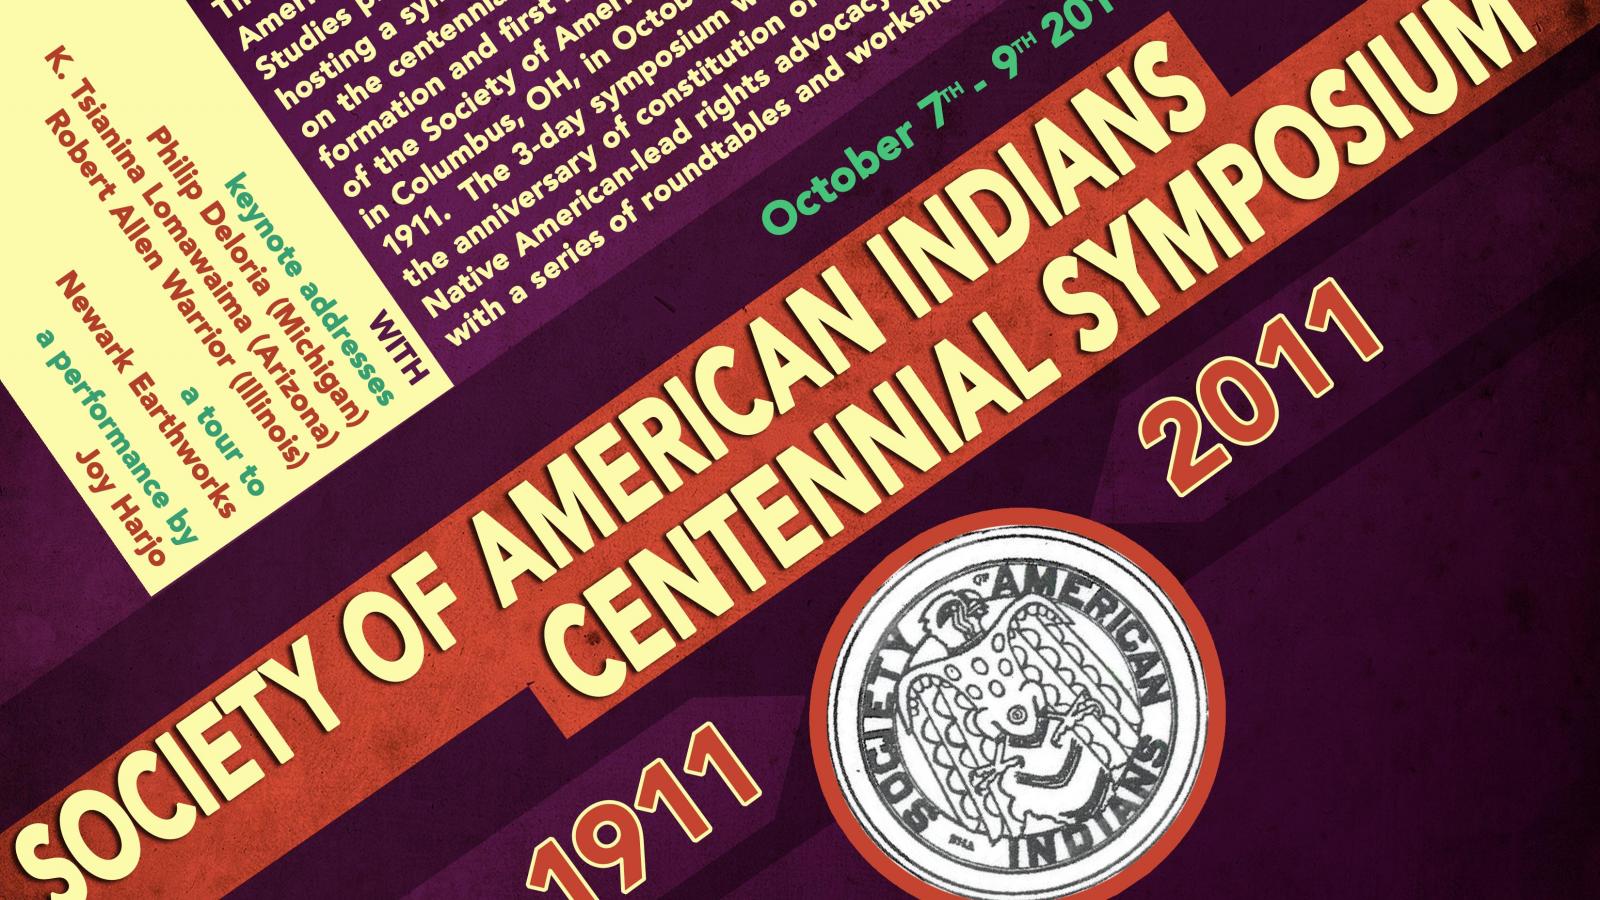 The SAI Centennial Flyer